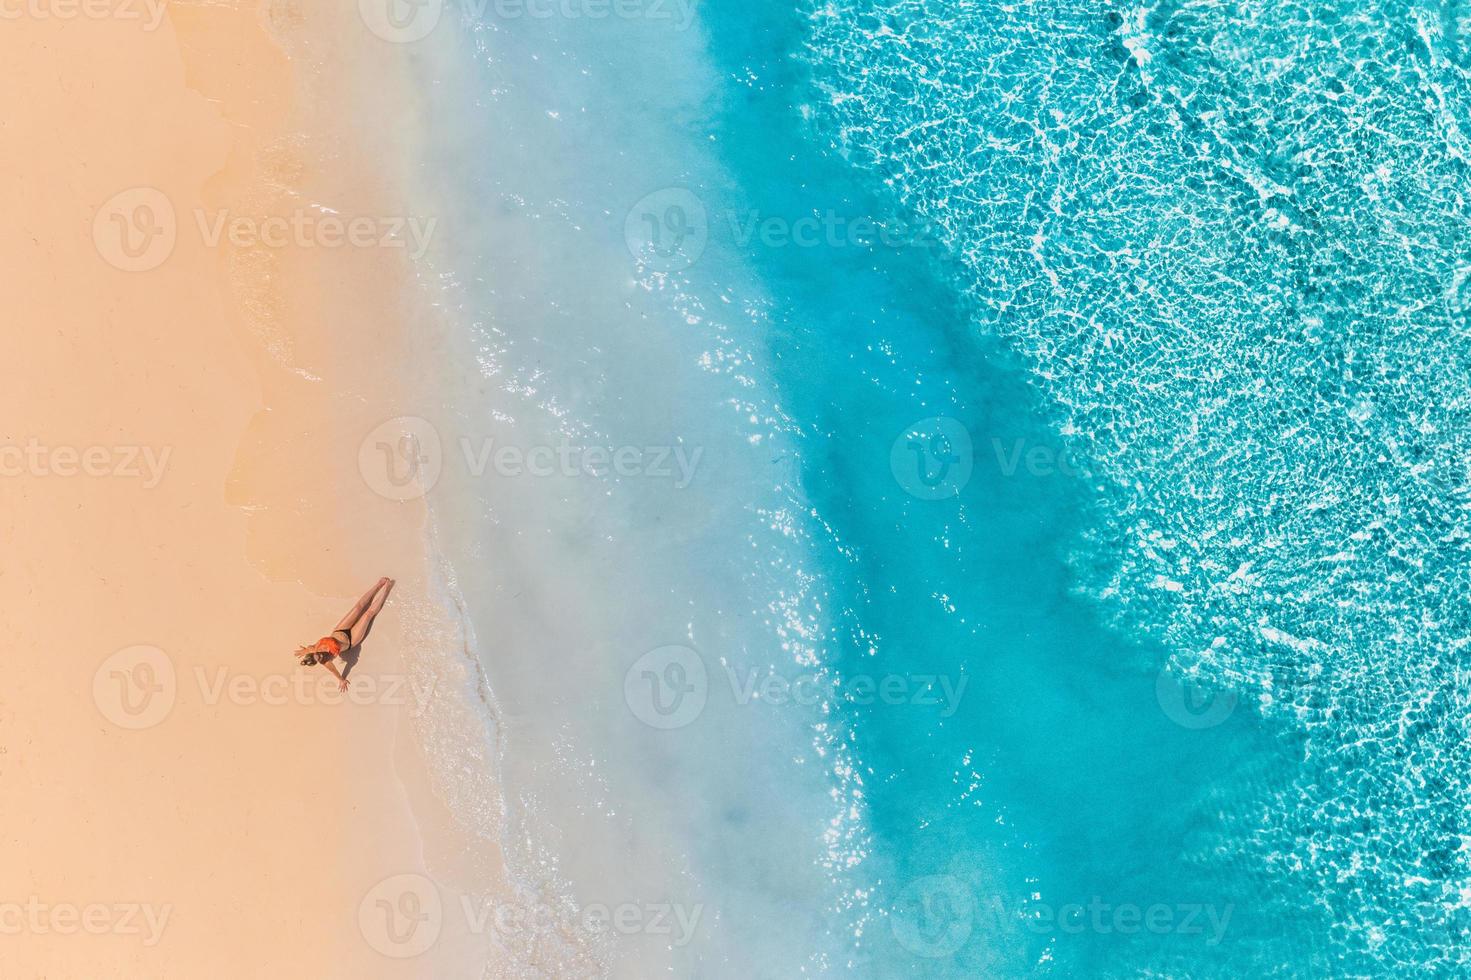 vista aérea de uma mulher na praia de biquíni deitada e tomando banho de sol. ondas perfeitas, splash relaxante verão liberdade luxo estilo de vida foto